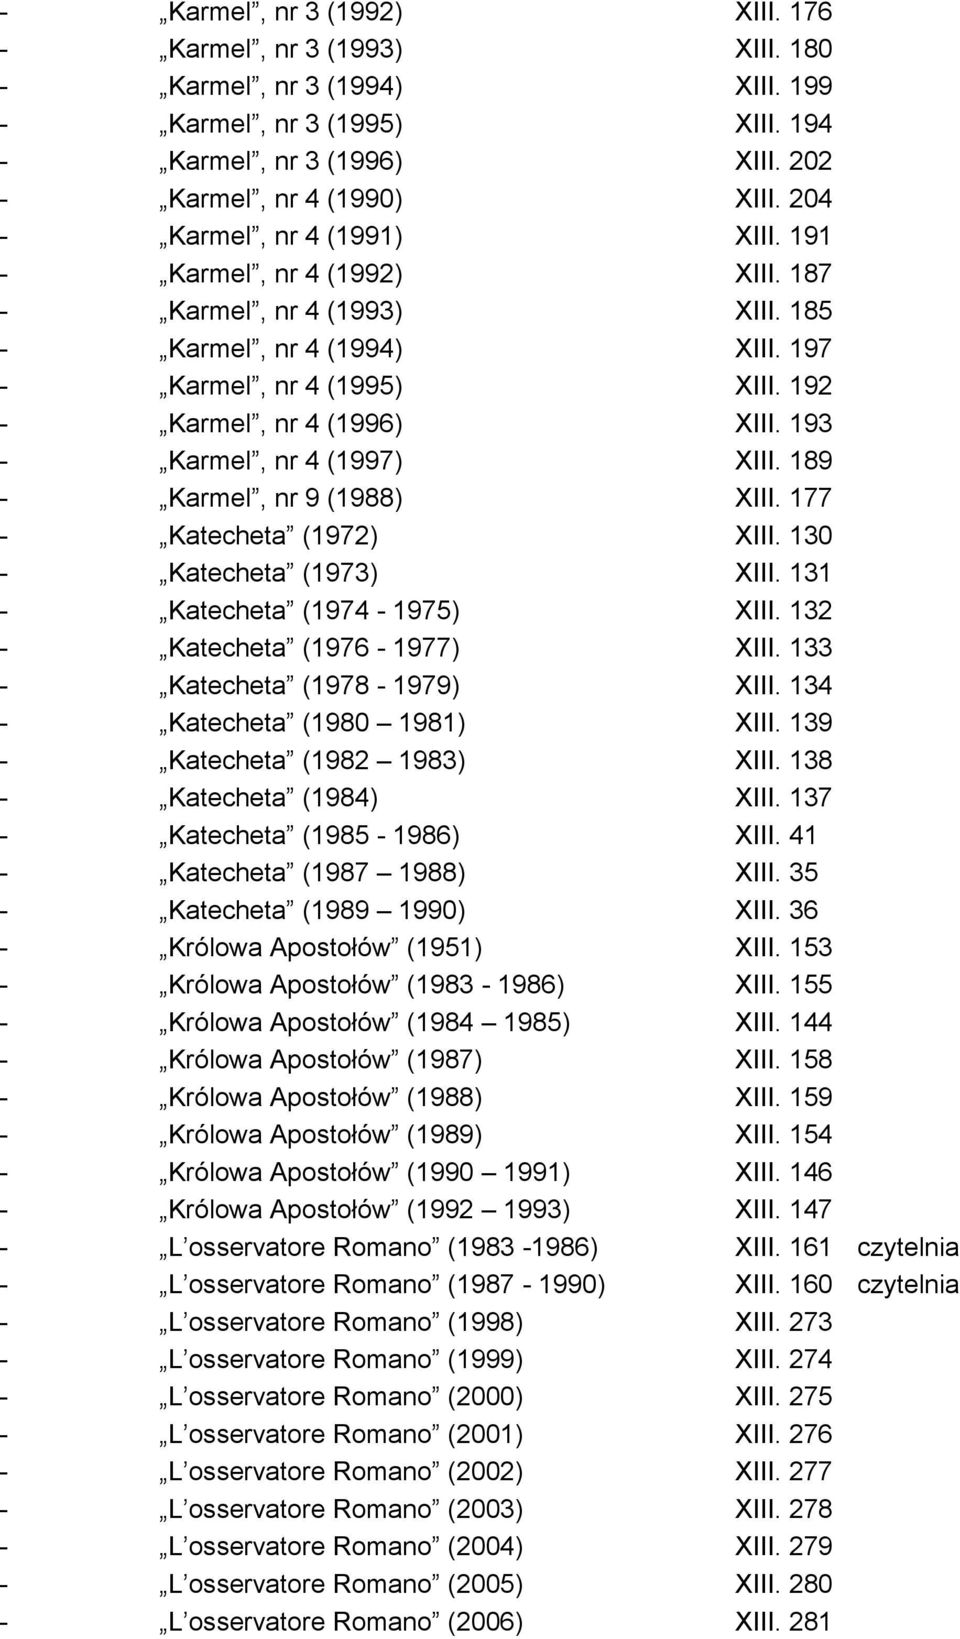 193 - Karmel, nr 4 (1997) XIII. 189 - Karmel, nr 9 (1988) XIII. 177 - Katecheta (1972) XIII. 130 - Katecheta (1973) XIII. 131 - Katecheta (1974-1975) XIII. 132 - Katecheta (1976-1977) XIII.